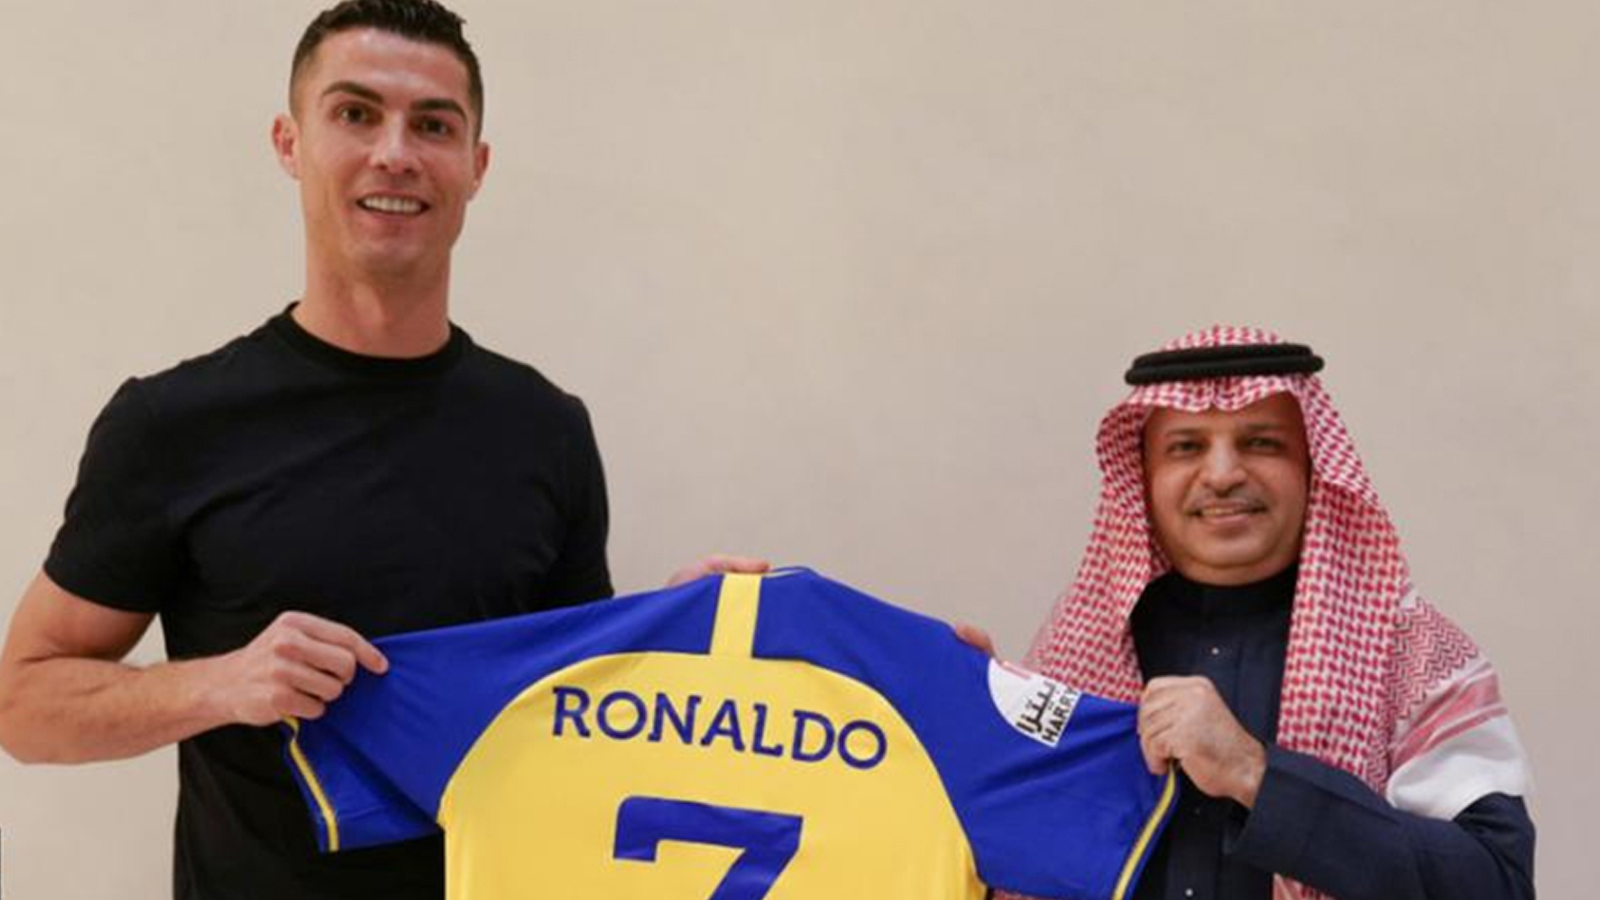 फुटबल इतिहासकै धेरै तलव लिएर साउदी क्लवमा आवद्ध भए रोनाल्डो